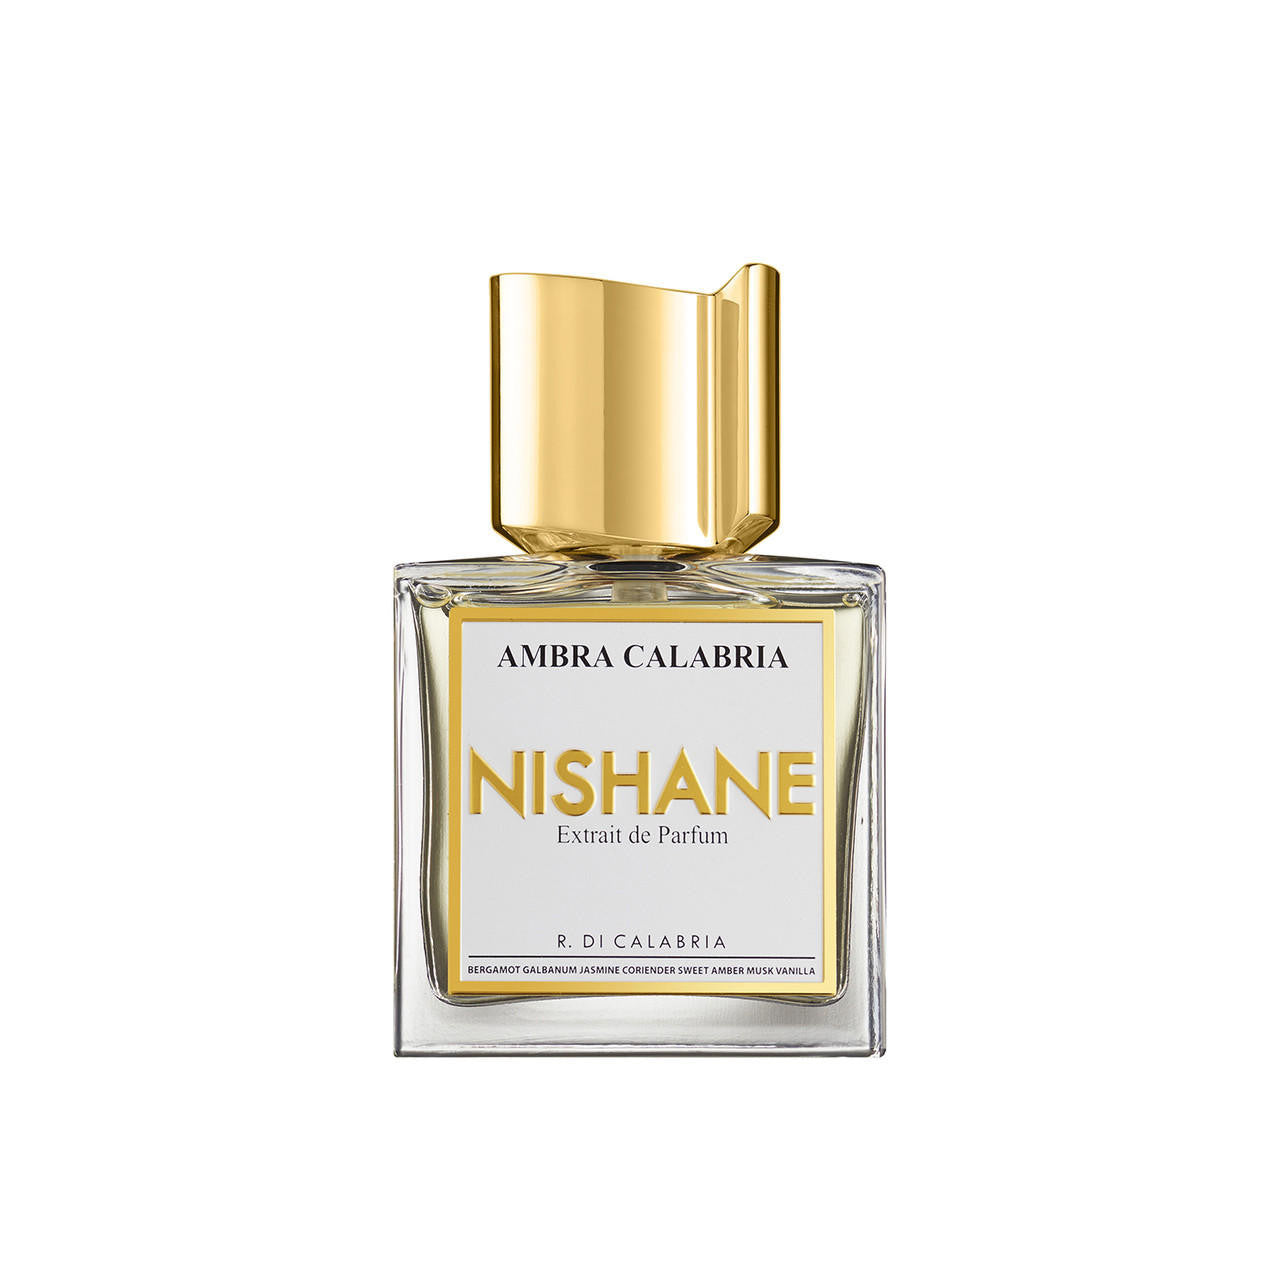  Nishane Ambra Calabria Extrait de Parfum 